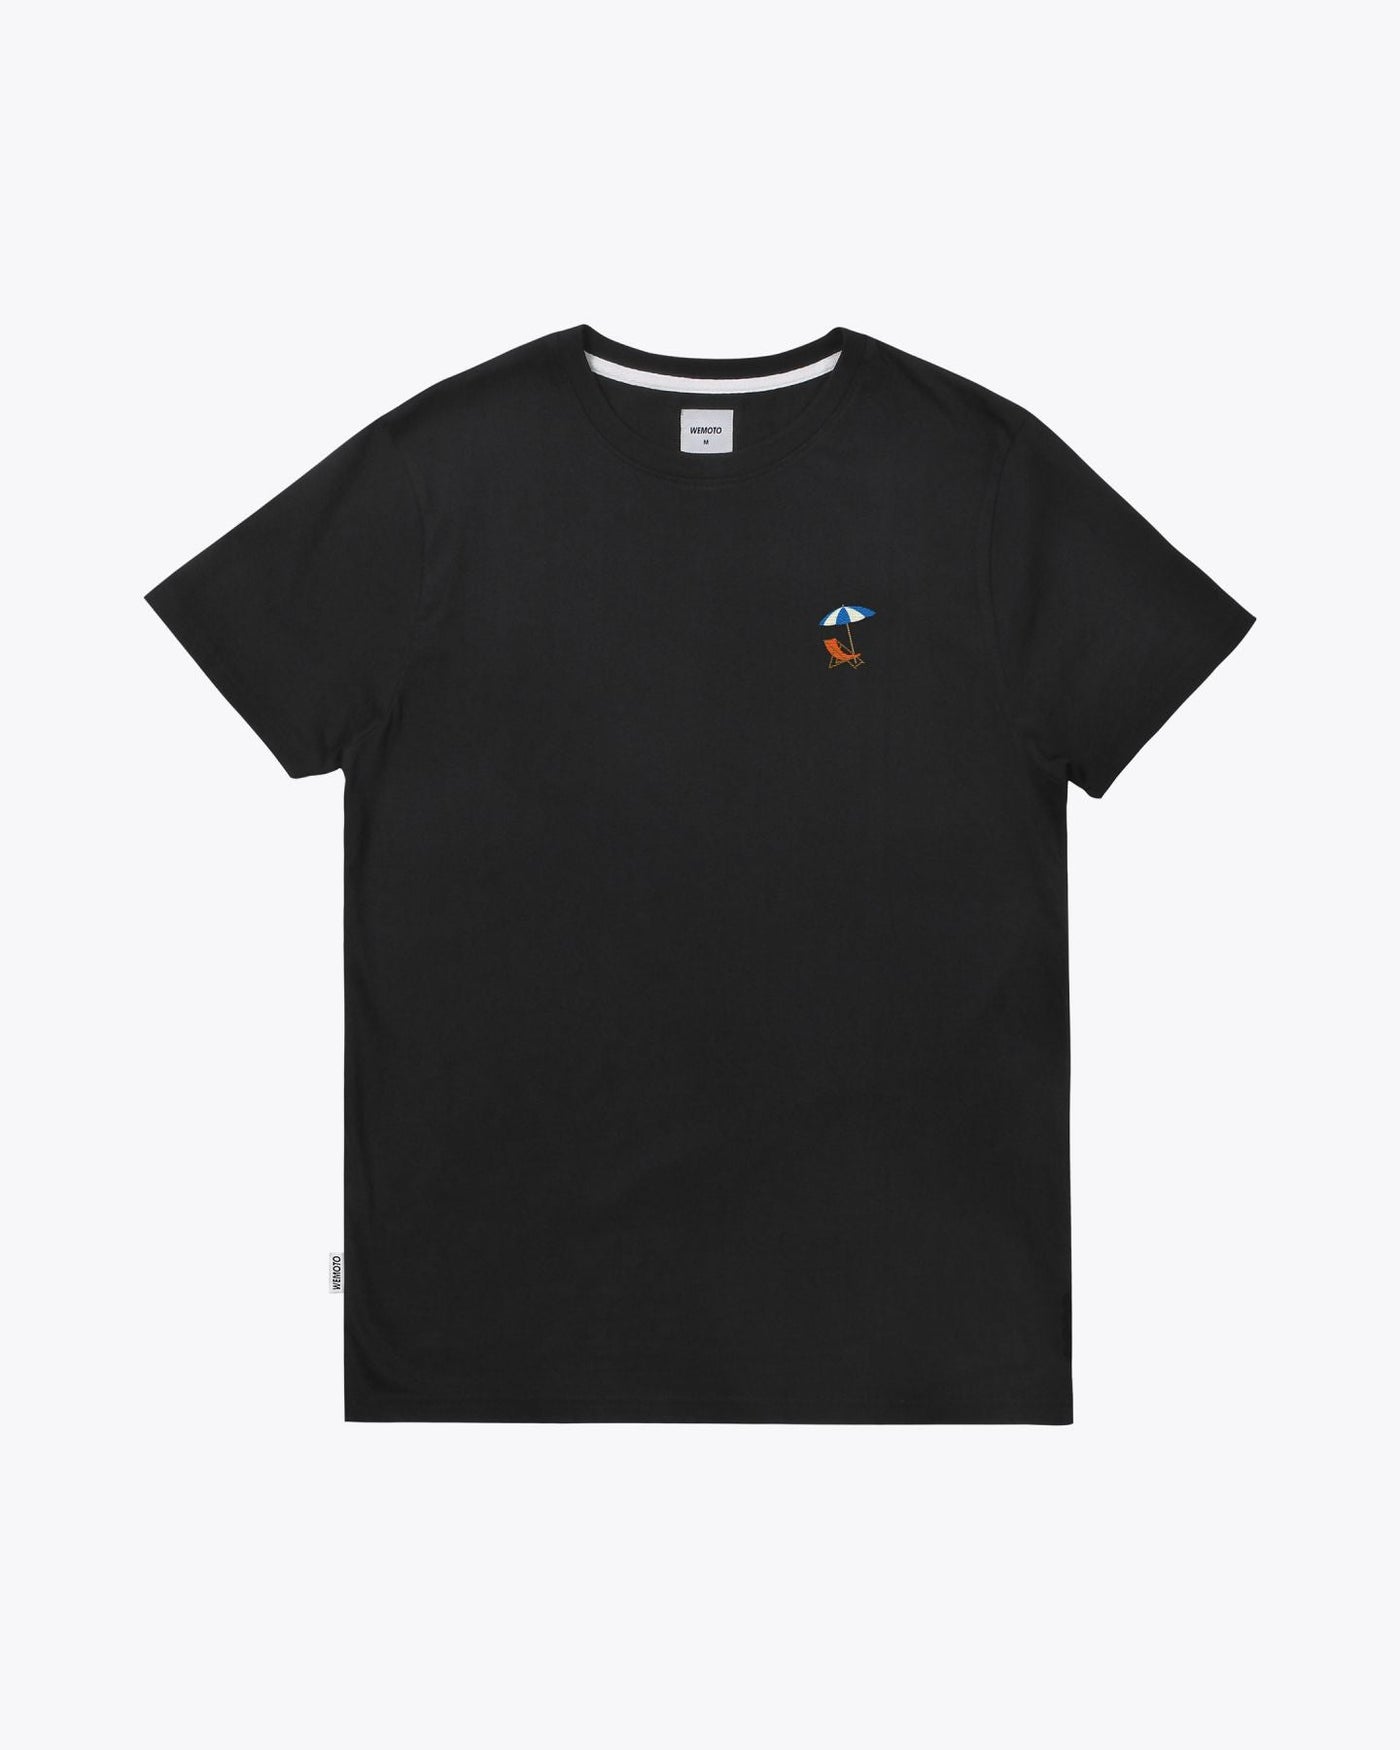 Wemoto T-shirt Beach Tee - Embroidered T-Shirt Black